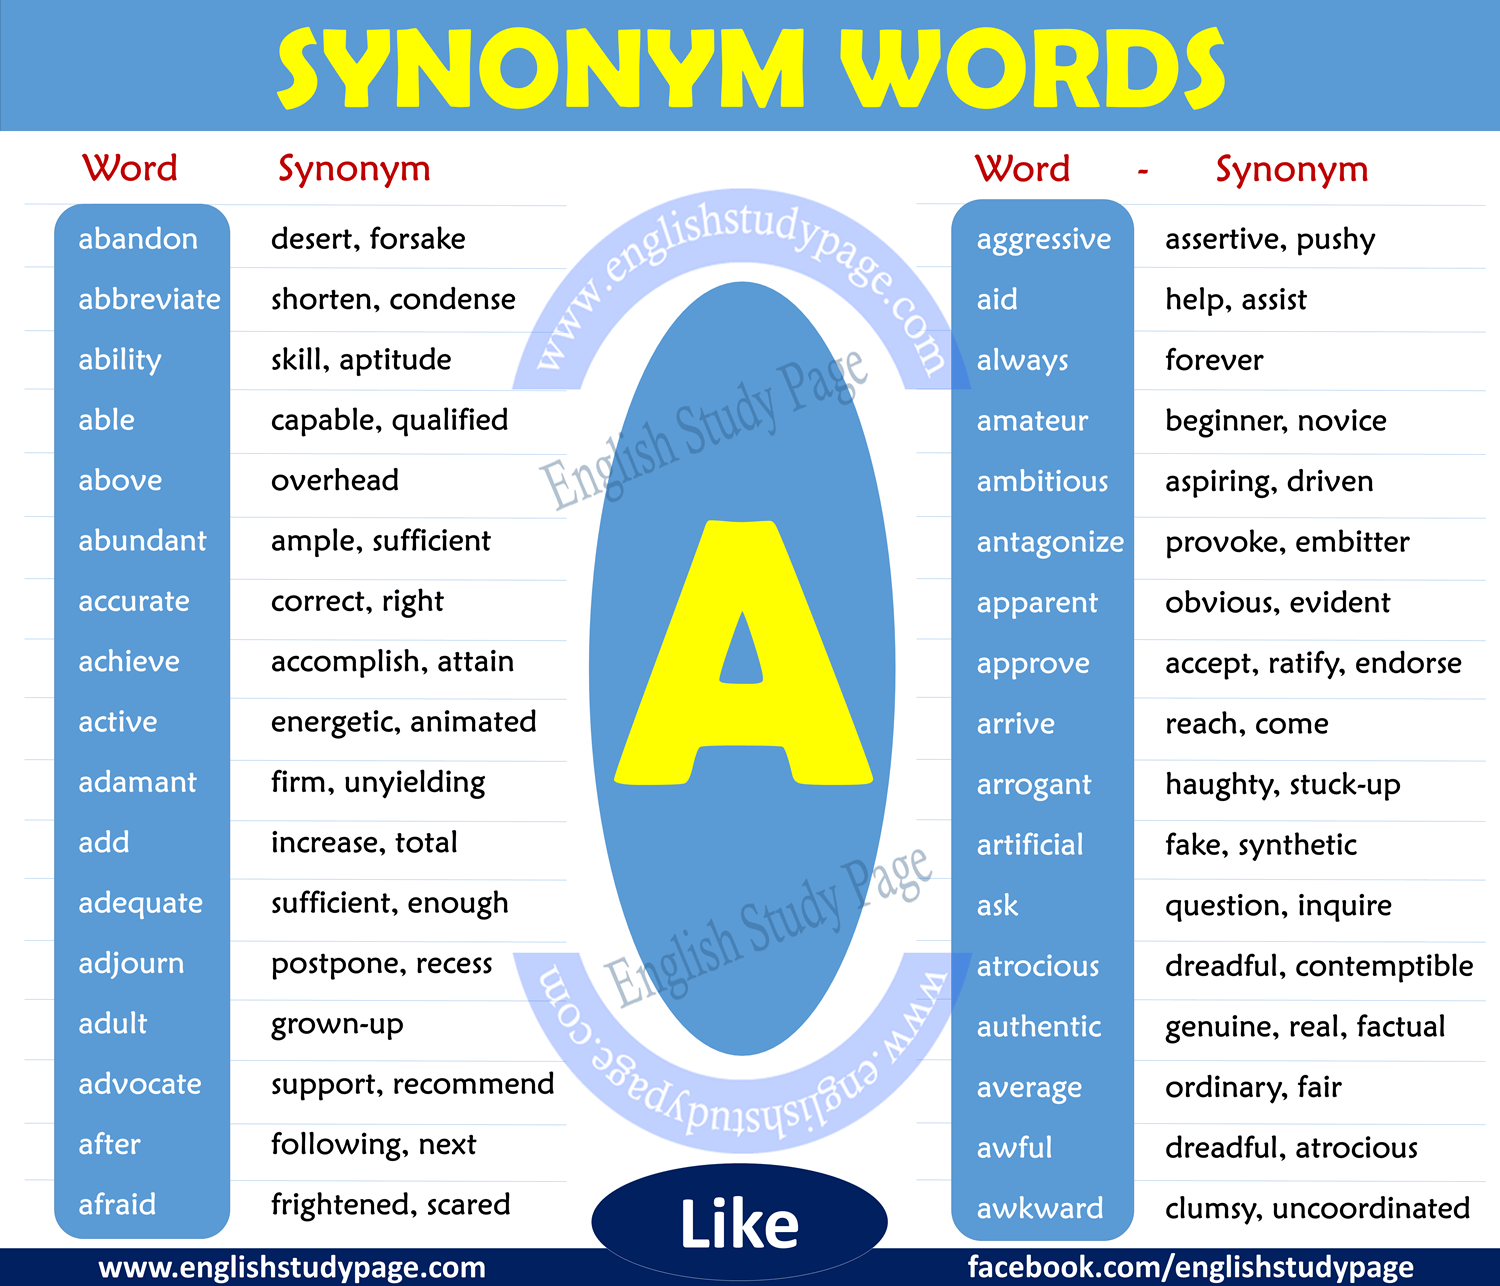 Synonym words - A